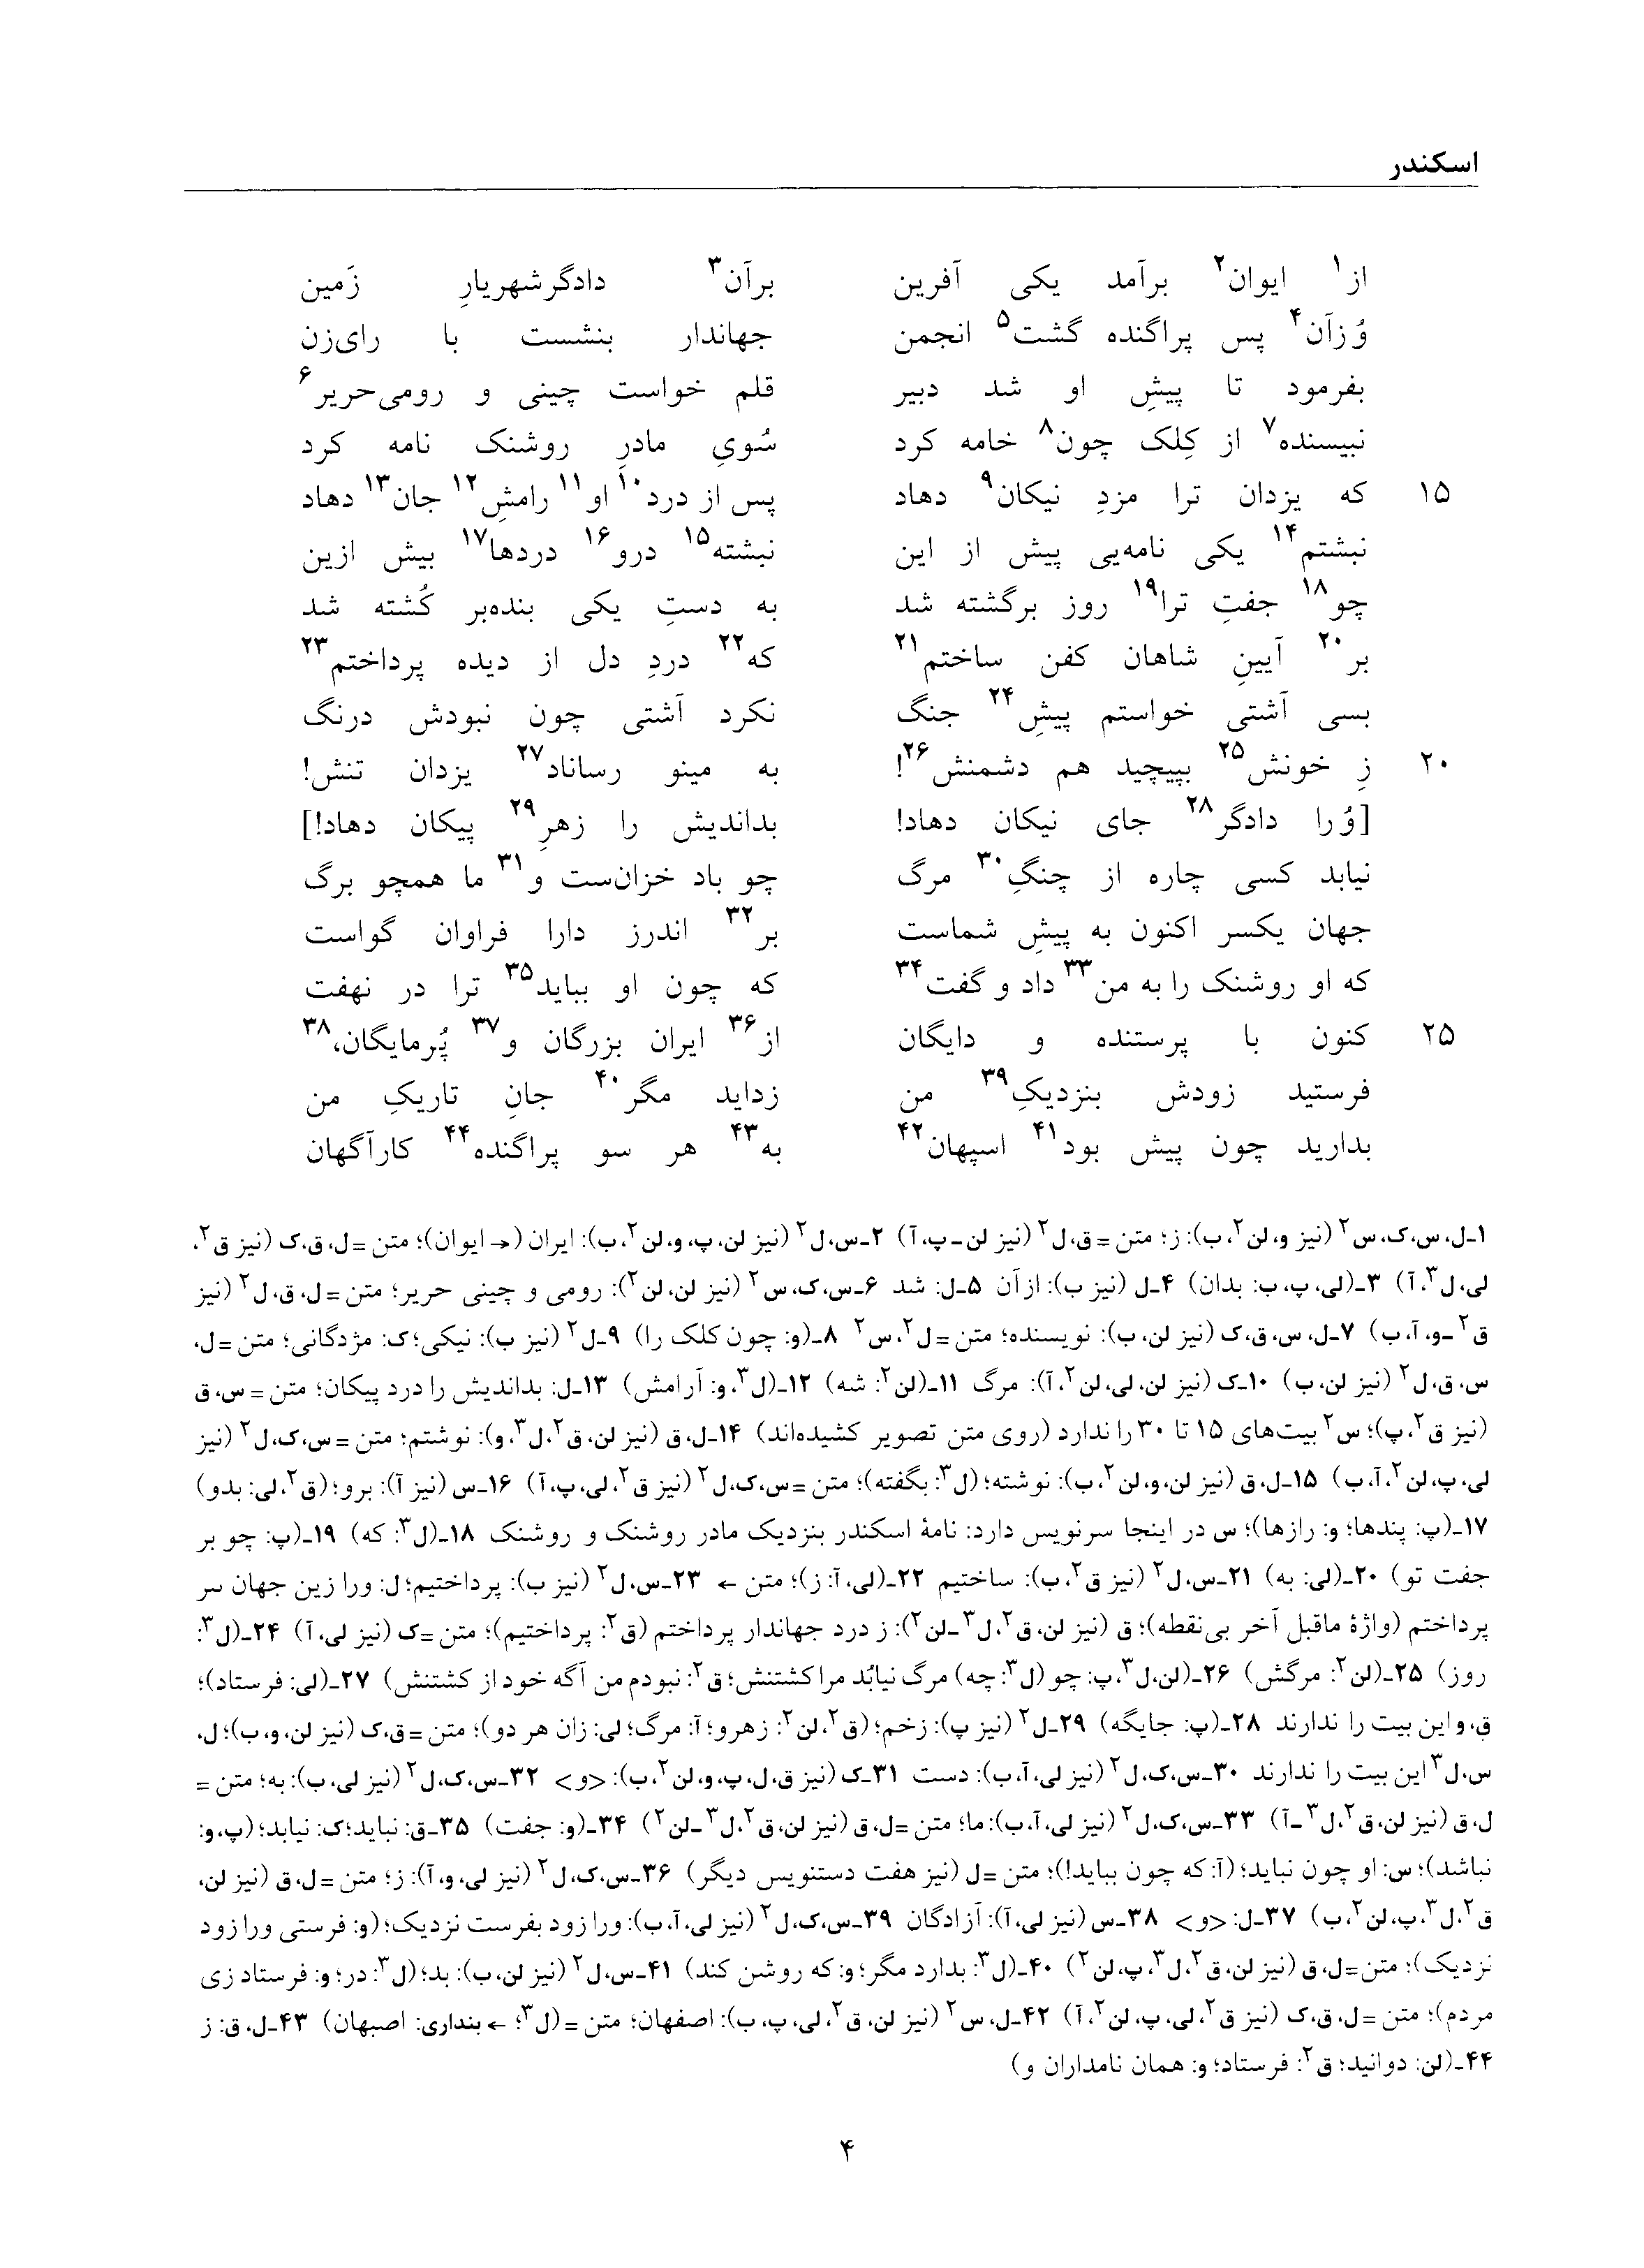 vol. 6, p. 4